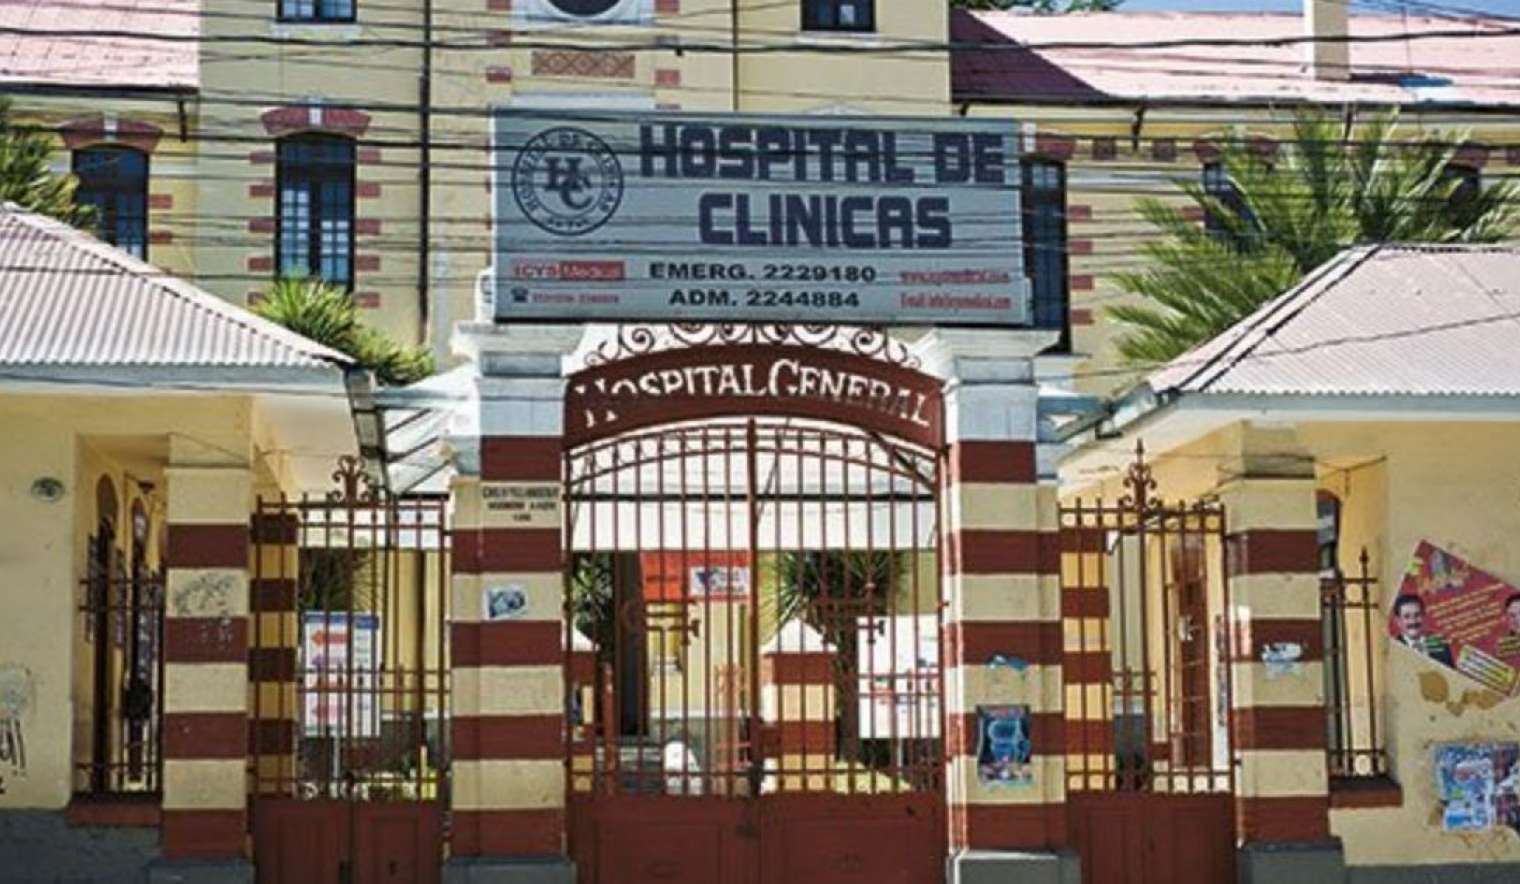 DELEGACIÓN DEFENSORIAL LA PAZ REALIZA SEGUIMIENTO A LA INSTALACIÓN DEL HOSPITAL DE CLÍNICAS PARA ATENCIÓN DE PACIENTES CON COVID-19